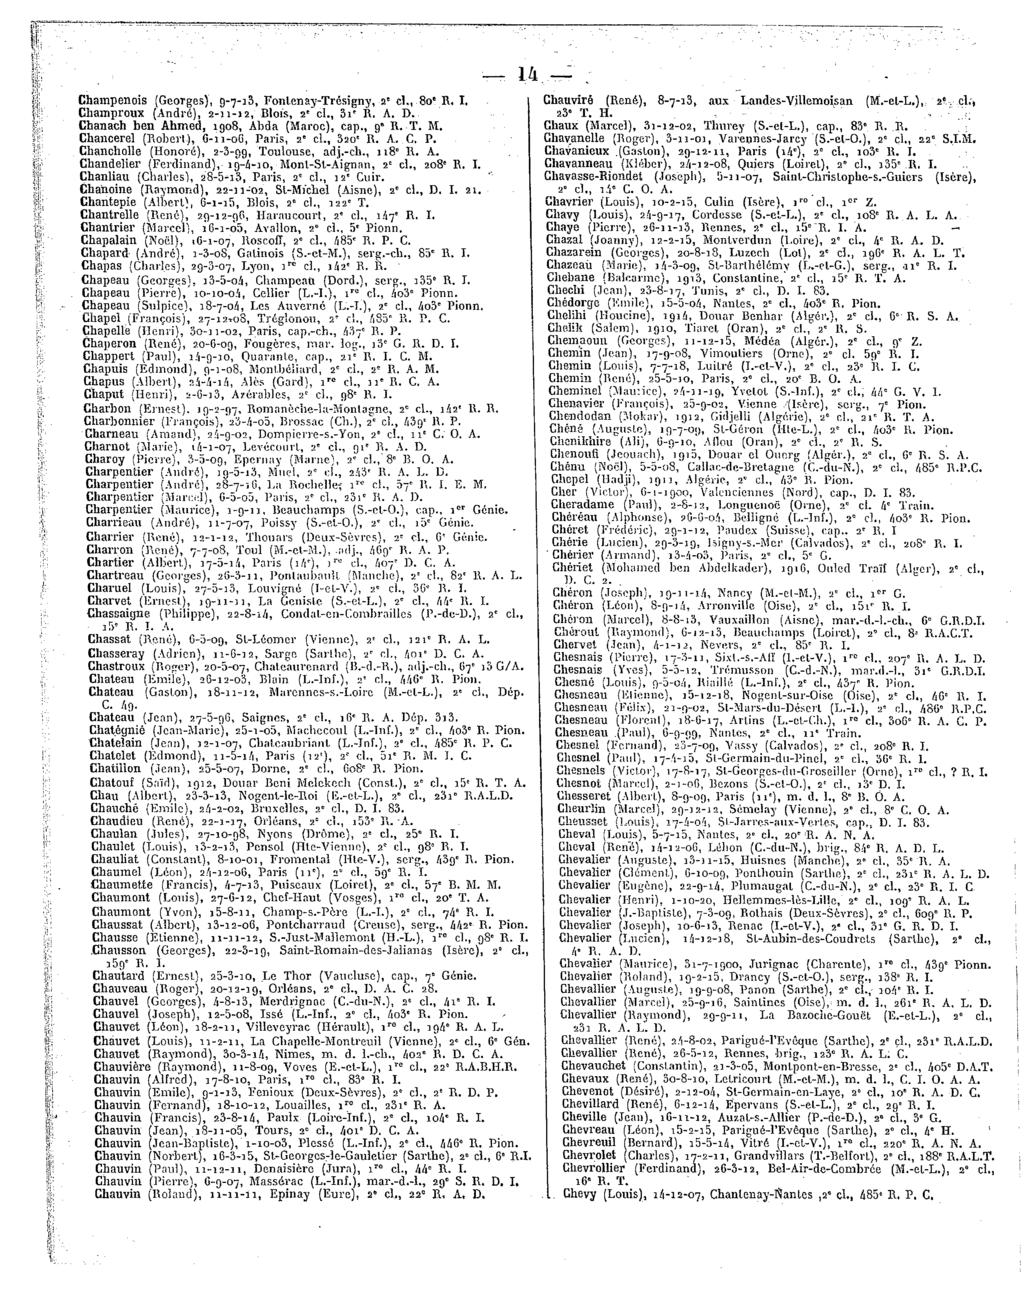 14 Champenois (Georges), 9-7-33, Fonlenay-Trésigny, 2*cl.,80"R.I, I Chauviré(René),8-7-13,aux Landes-Villemoisan (M.-el-L.), 2?.cl., Champroux (André),2-11-12, Blois,2*'cl.,3s'R. A.D. 23"T. H.,.. '' r ChanachbenAhmed,1908,Abda(Maroc), cap.